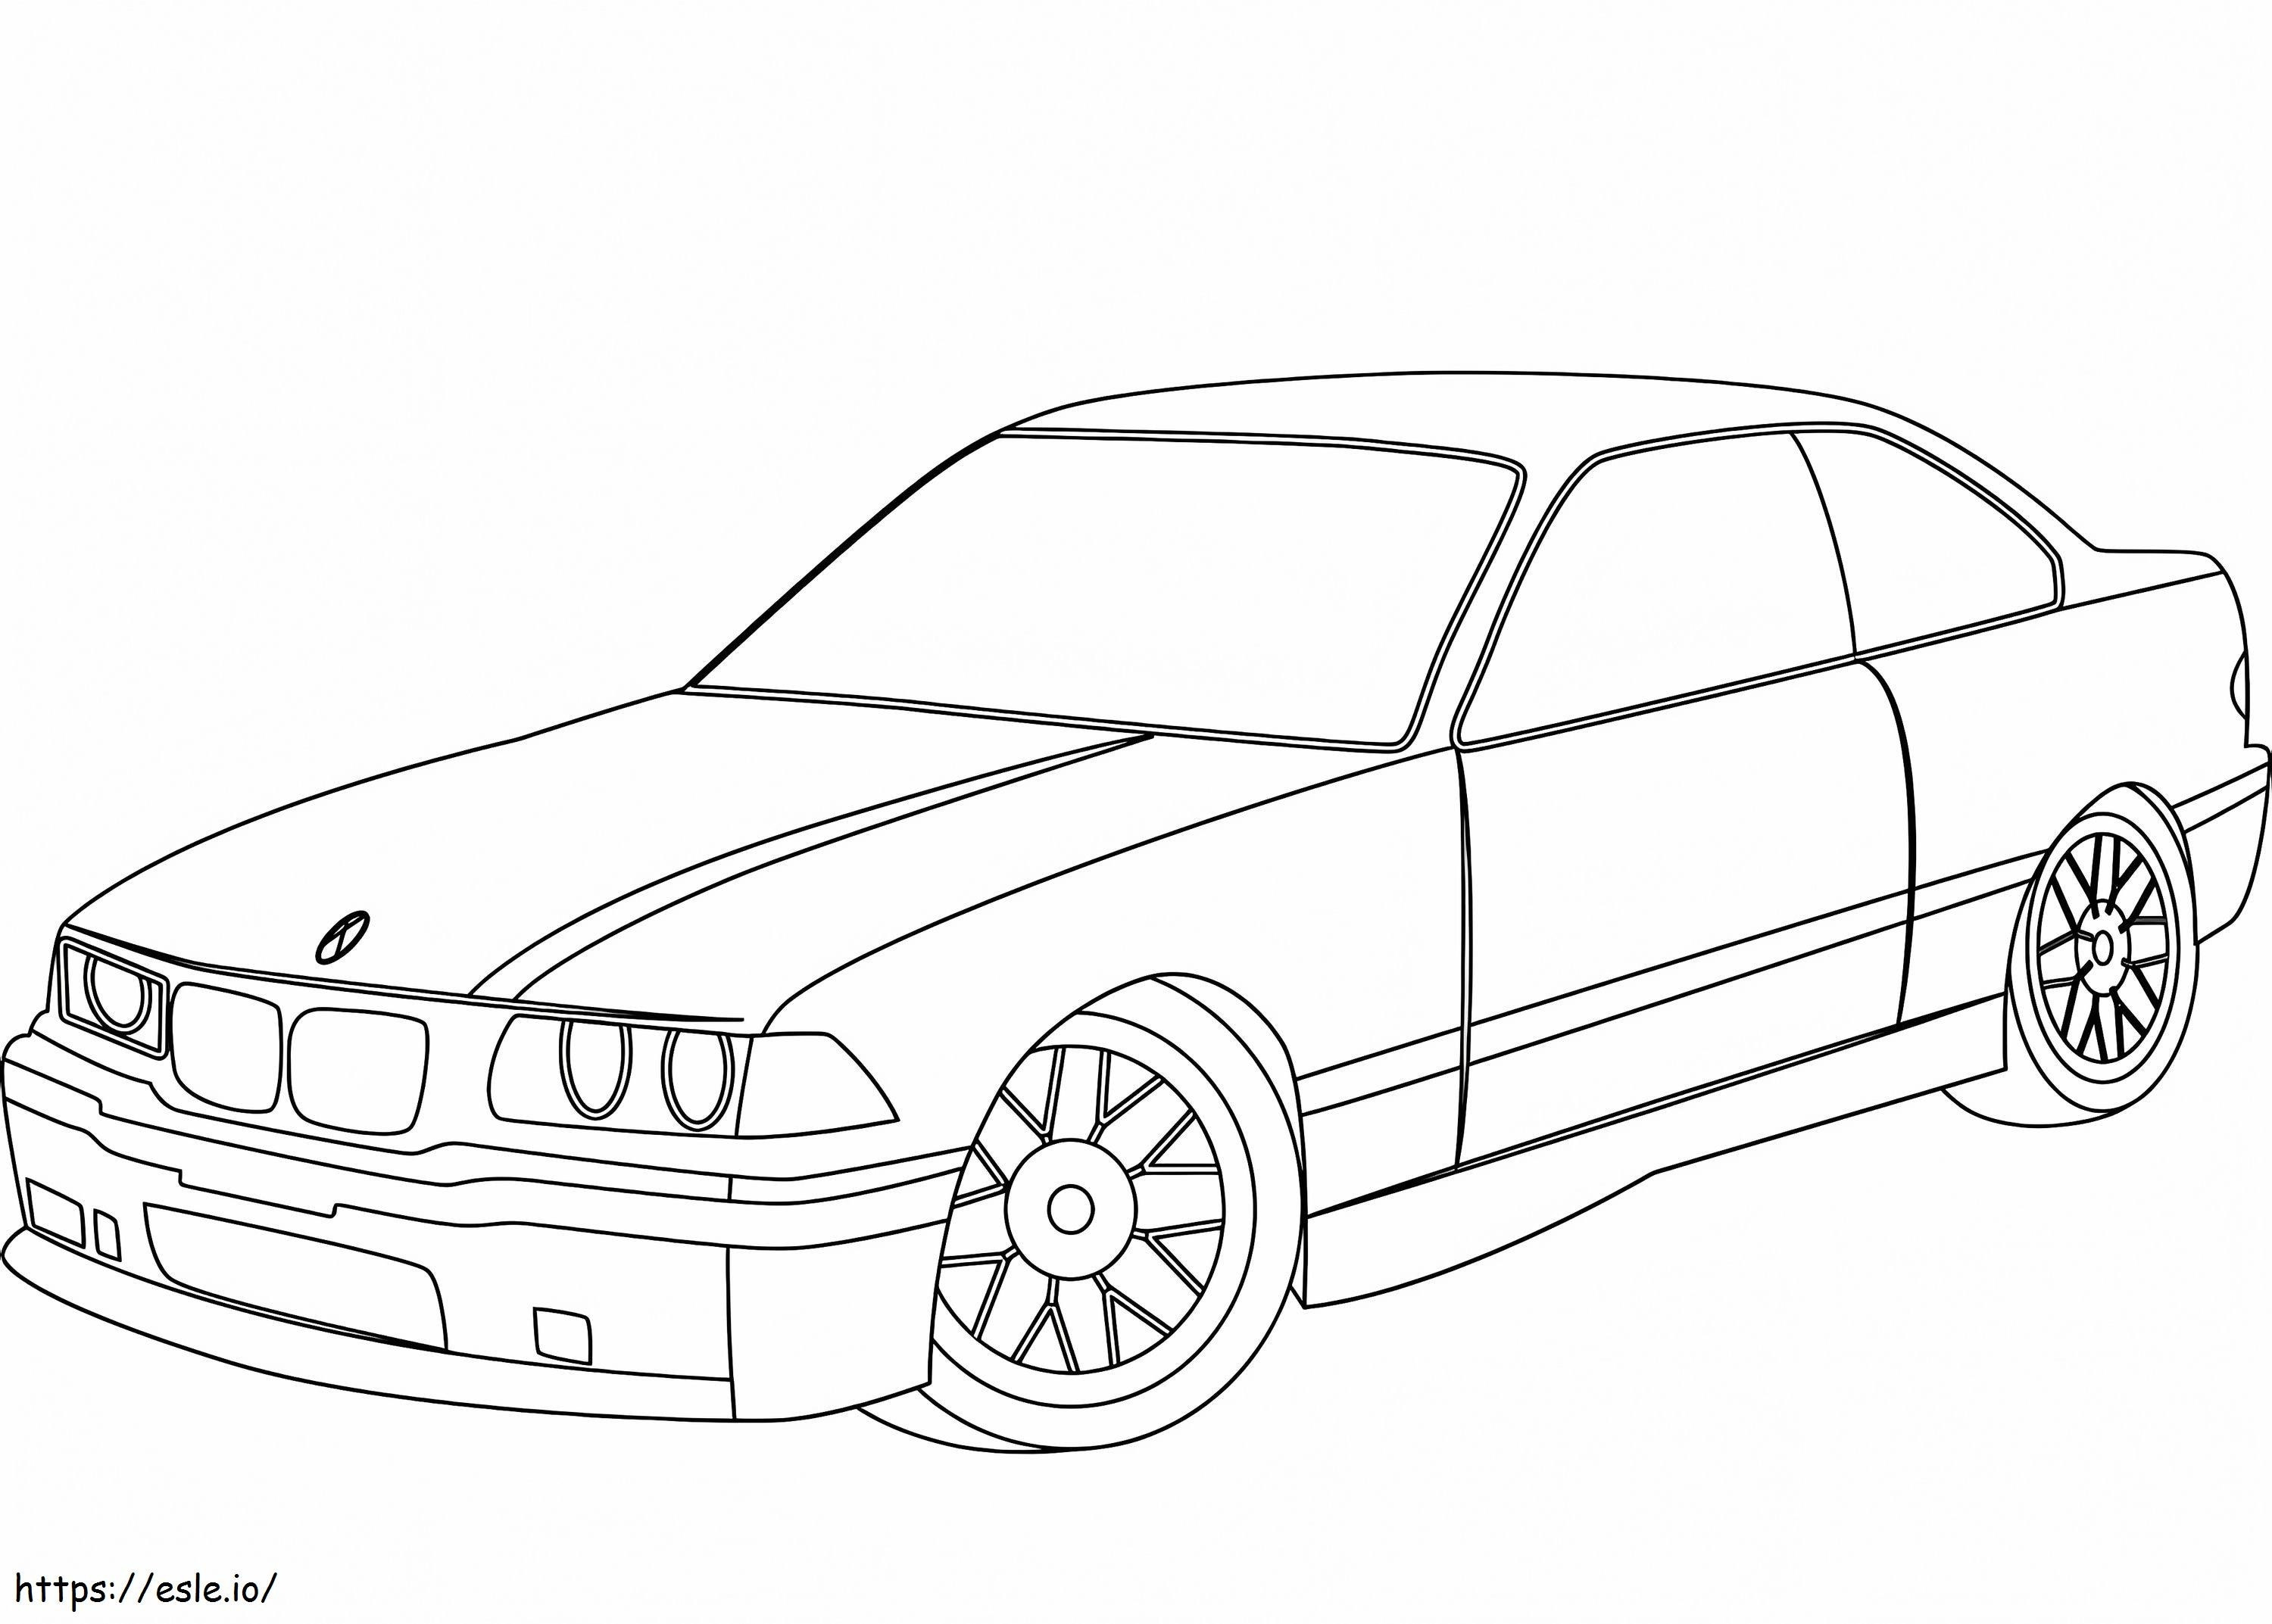 BMW E36 kleurplaat kleurplaat